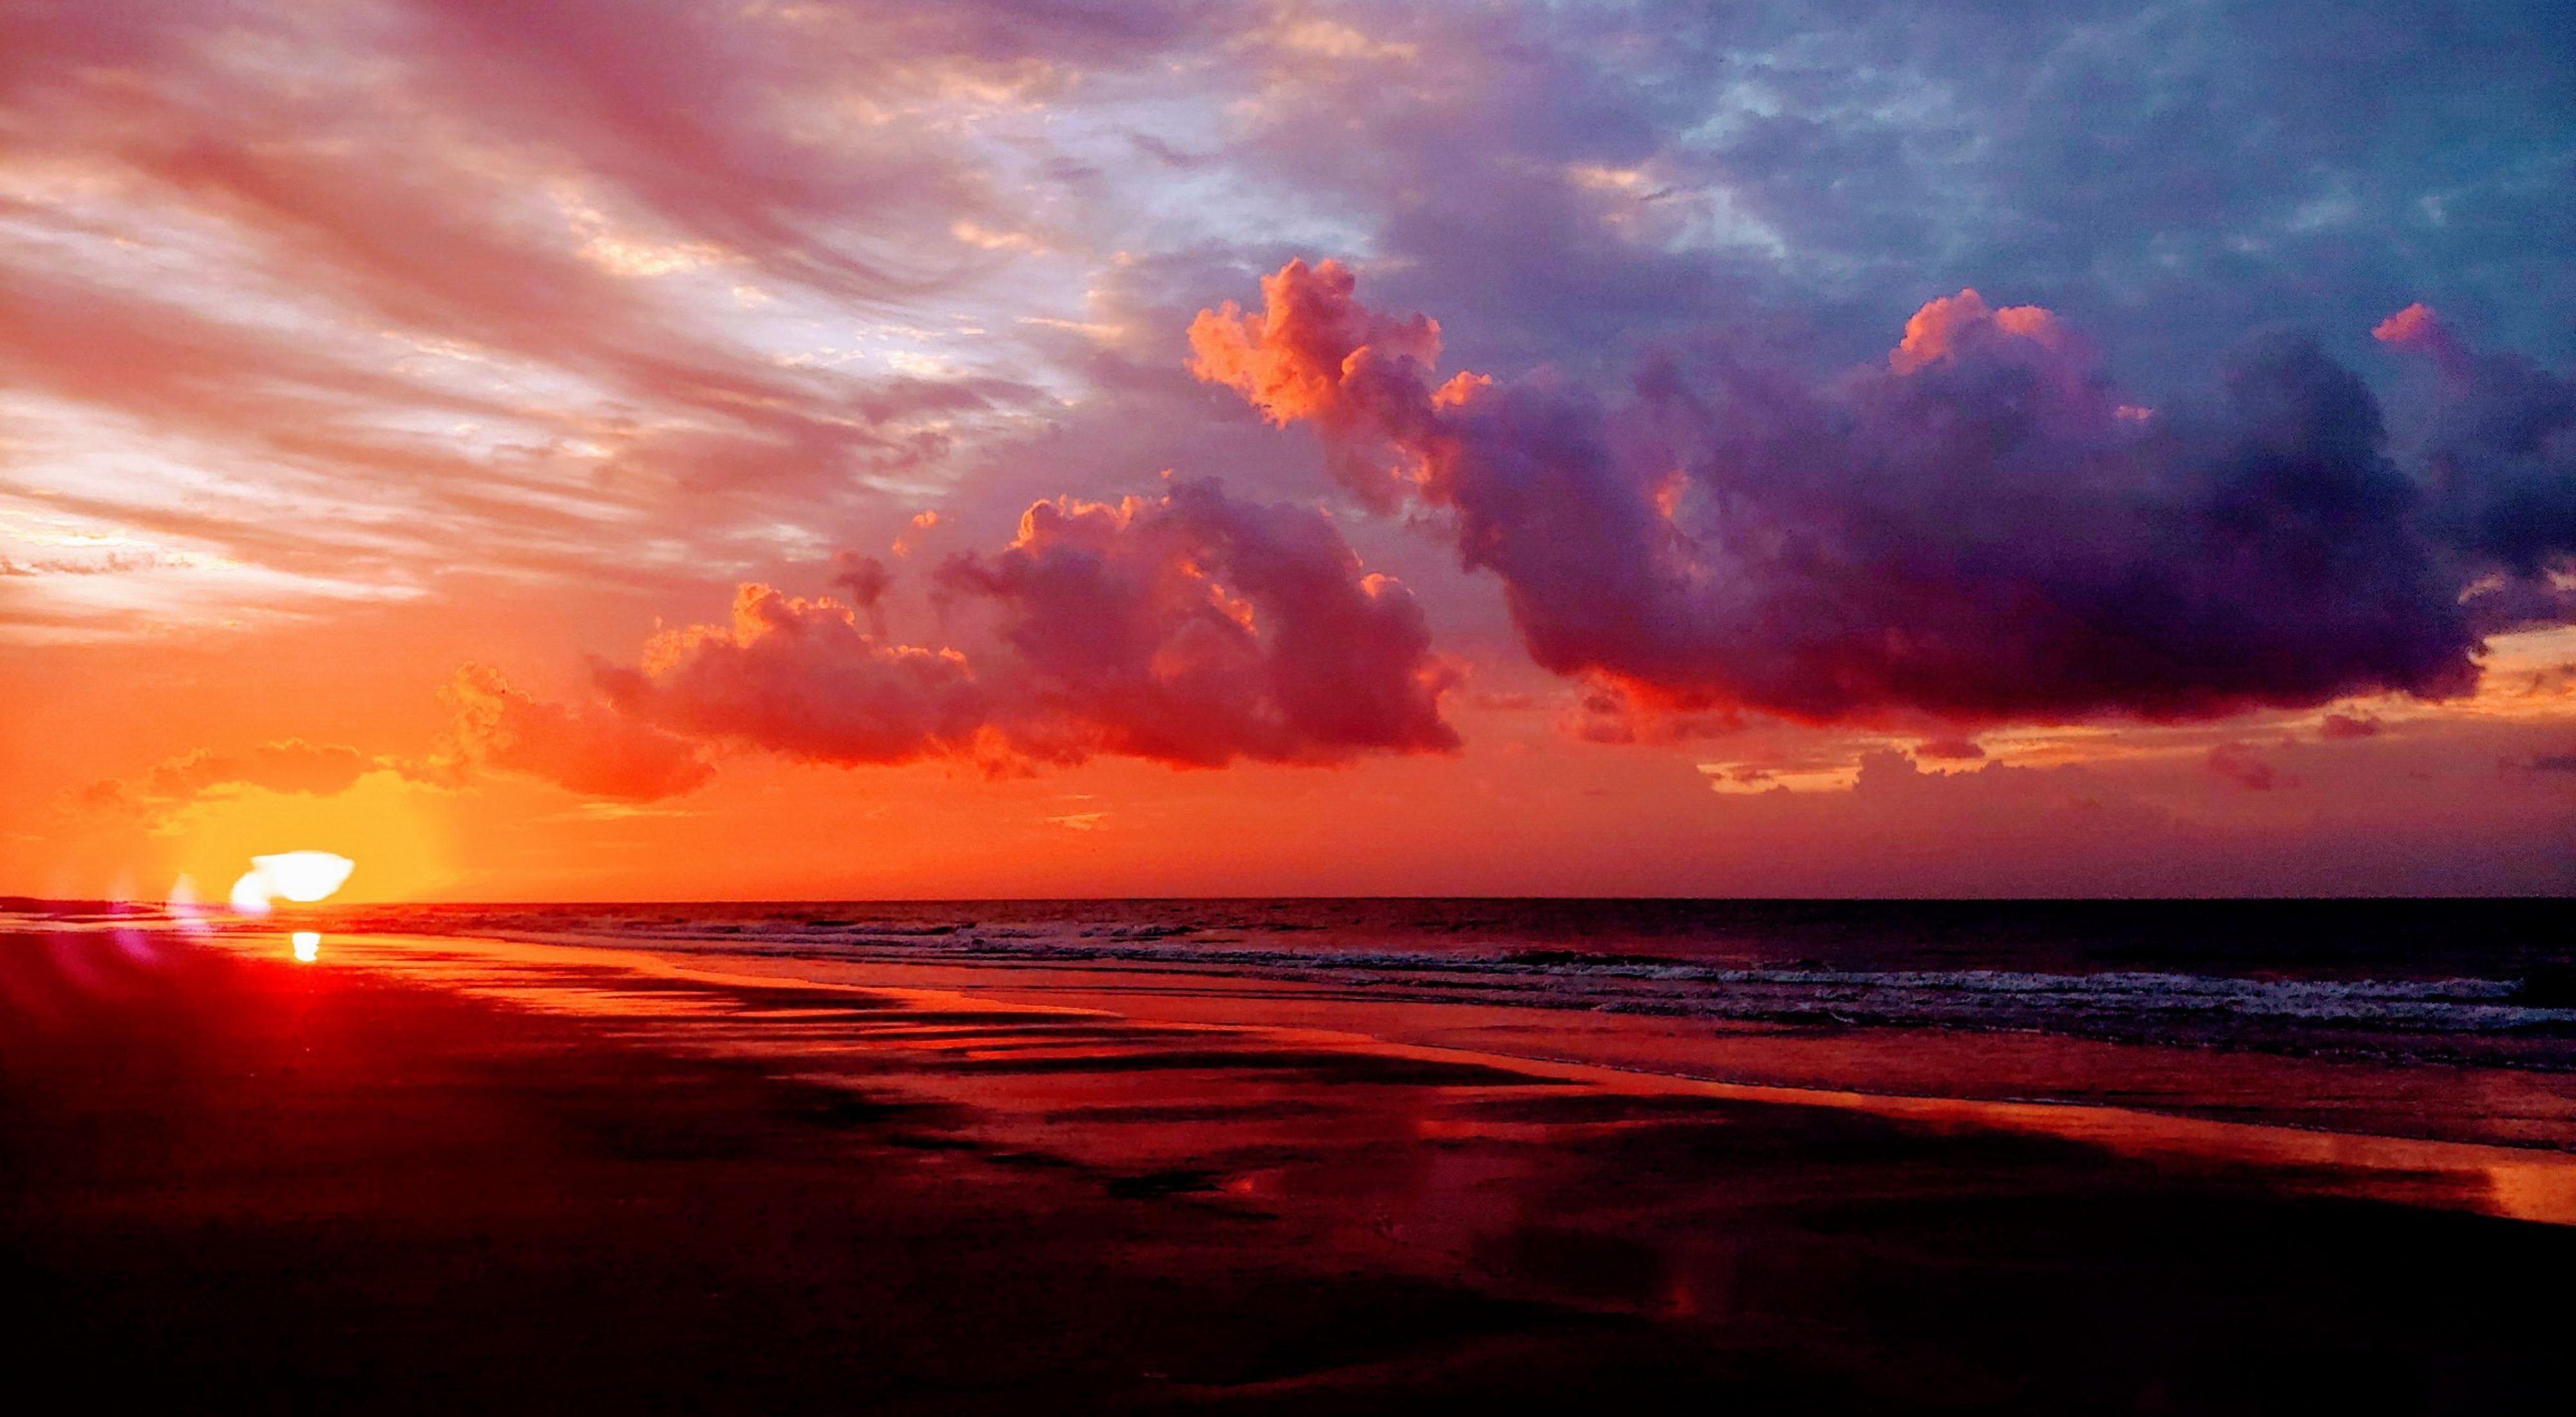 Sunrise over the ocean and a flat sandy beach